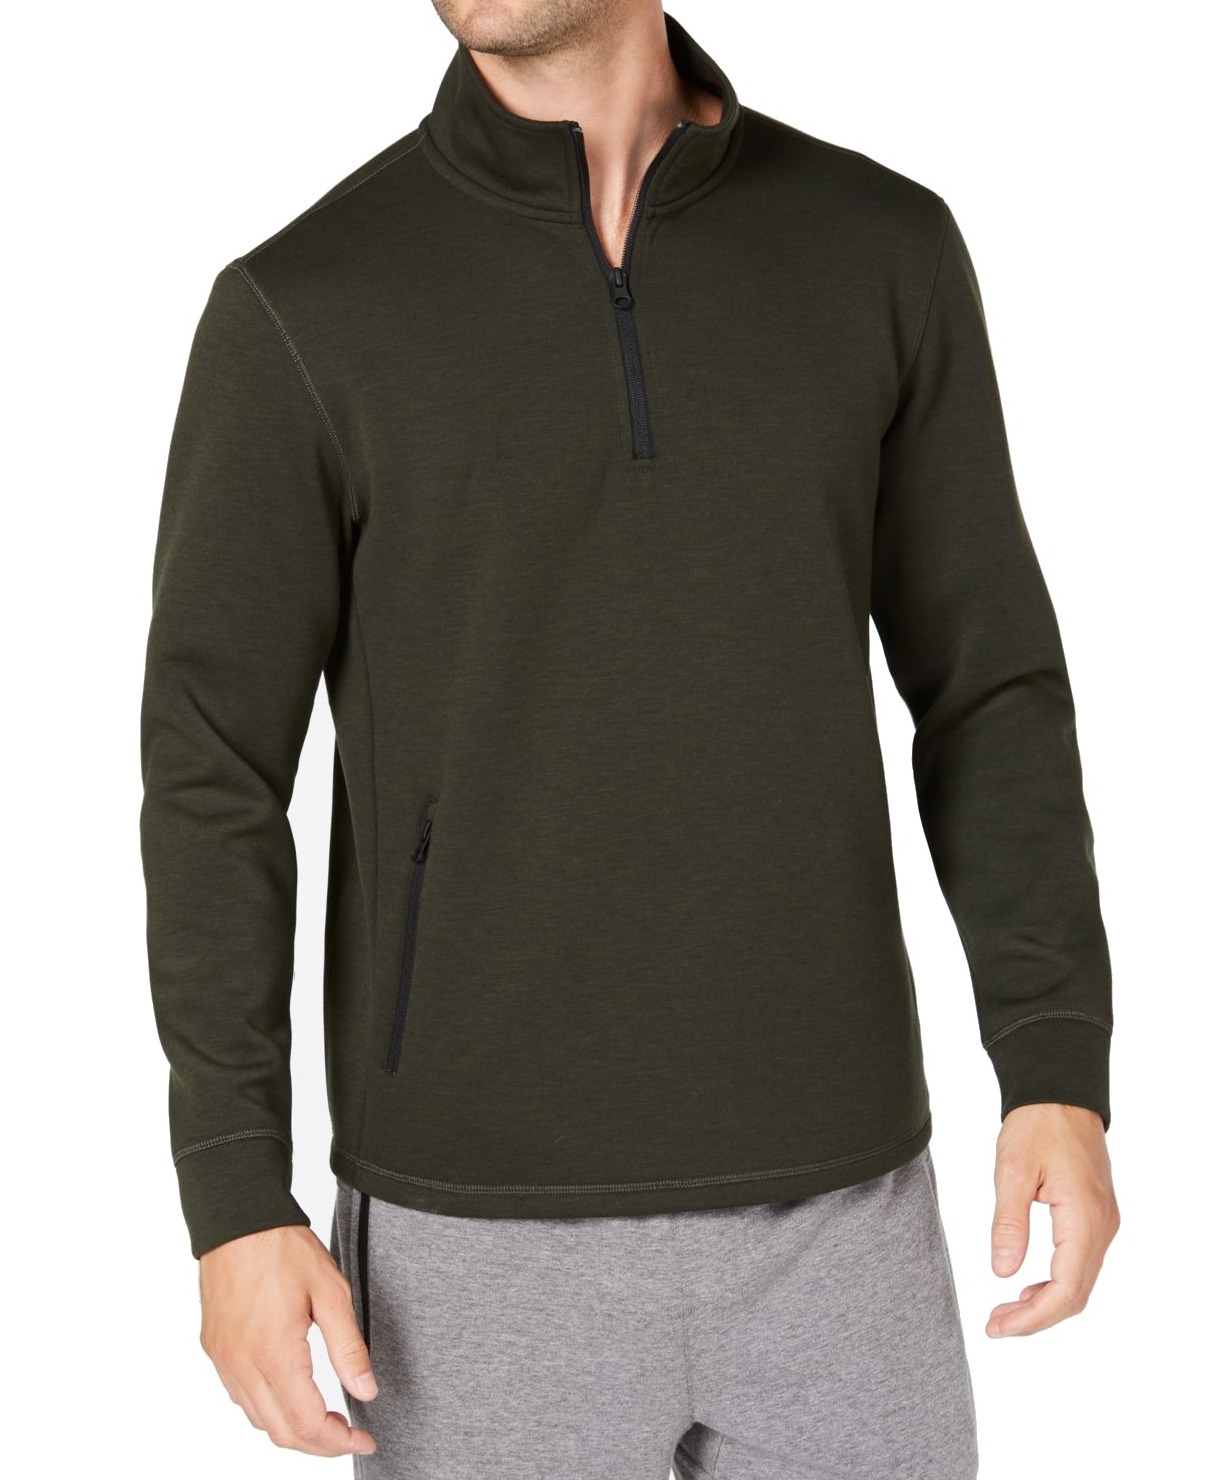 32 Degrees - Olive Mens 1/2 Zip Fleece Tech Sweater 2XL - Walmart.com ...